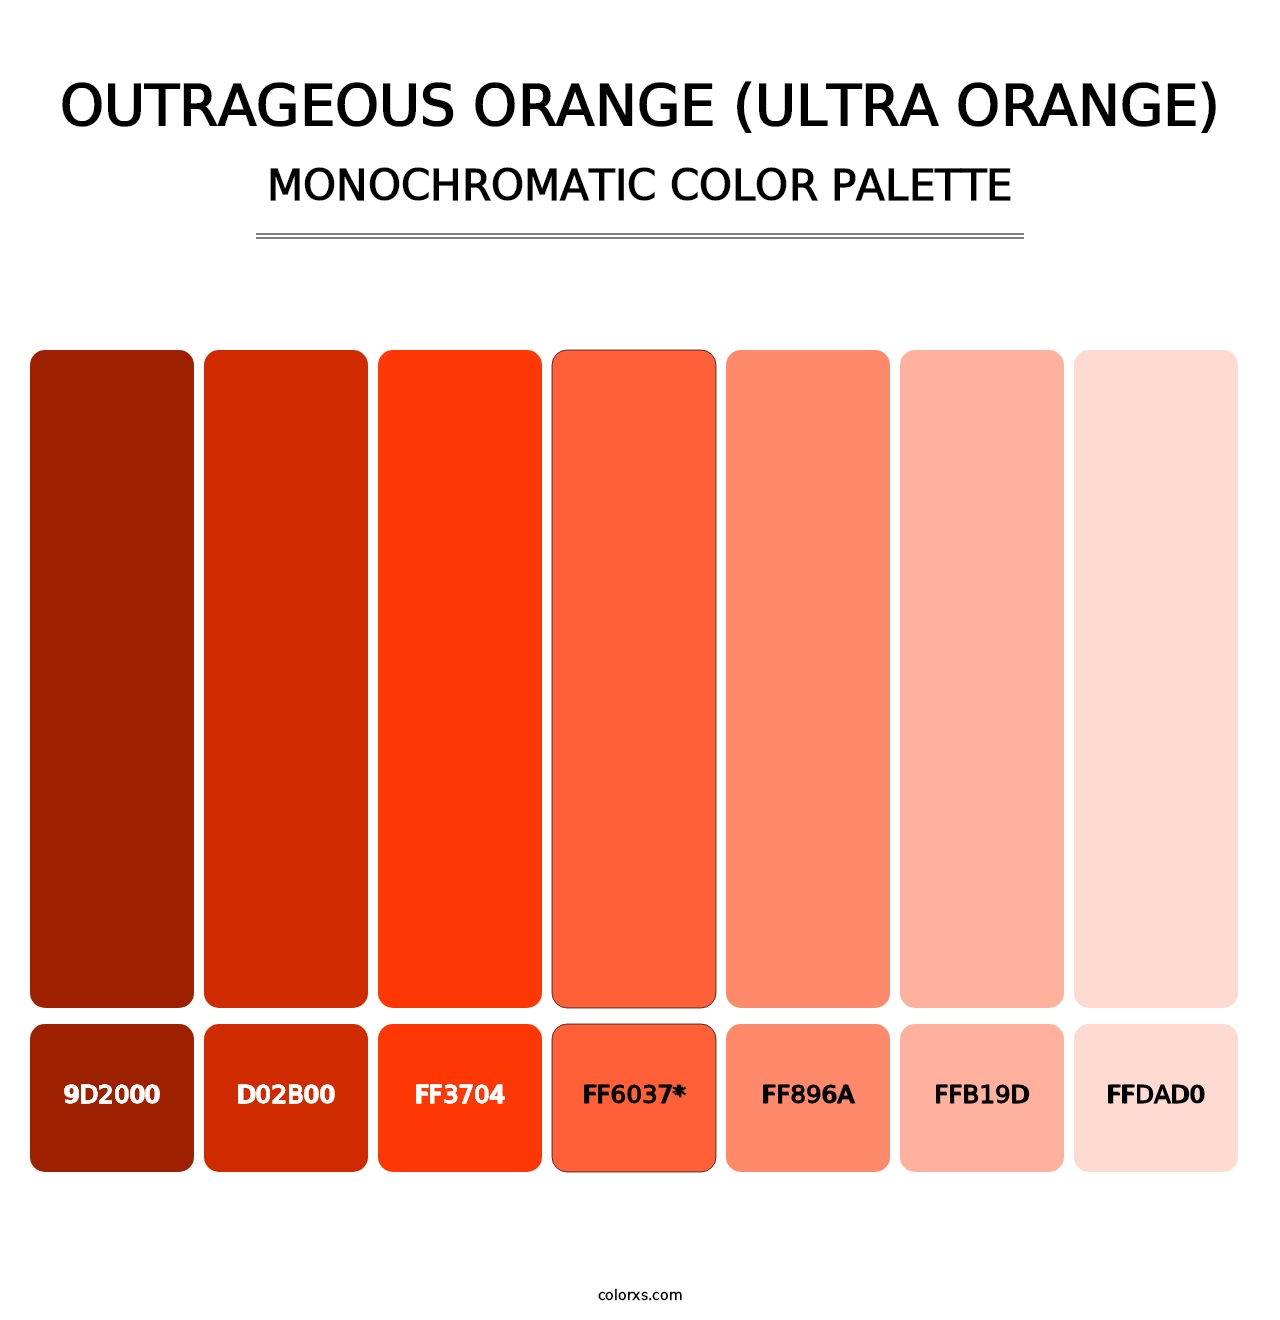 Outrageous Orange (Ultra Orange) - Monochromatic Color Palette